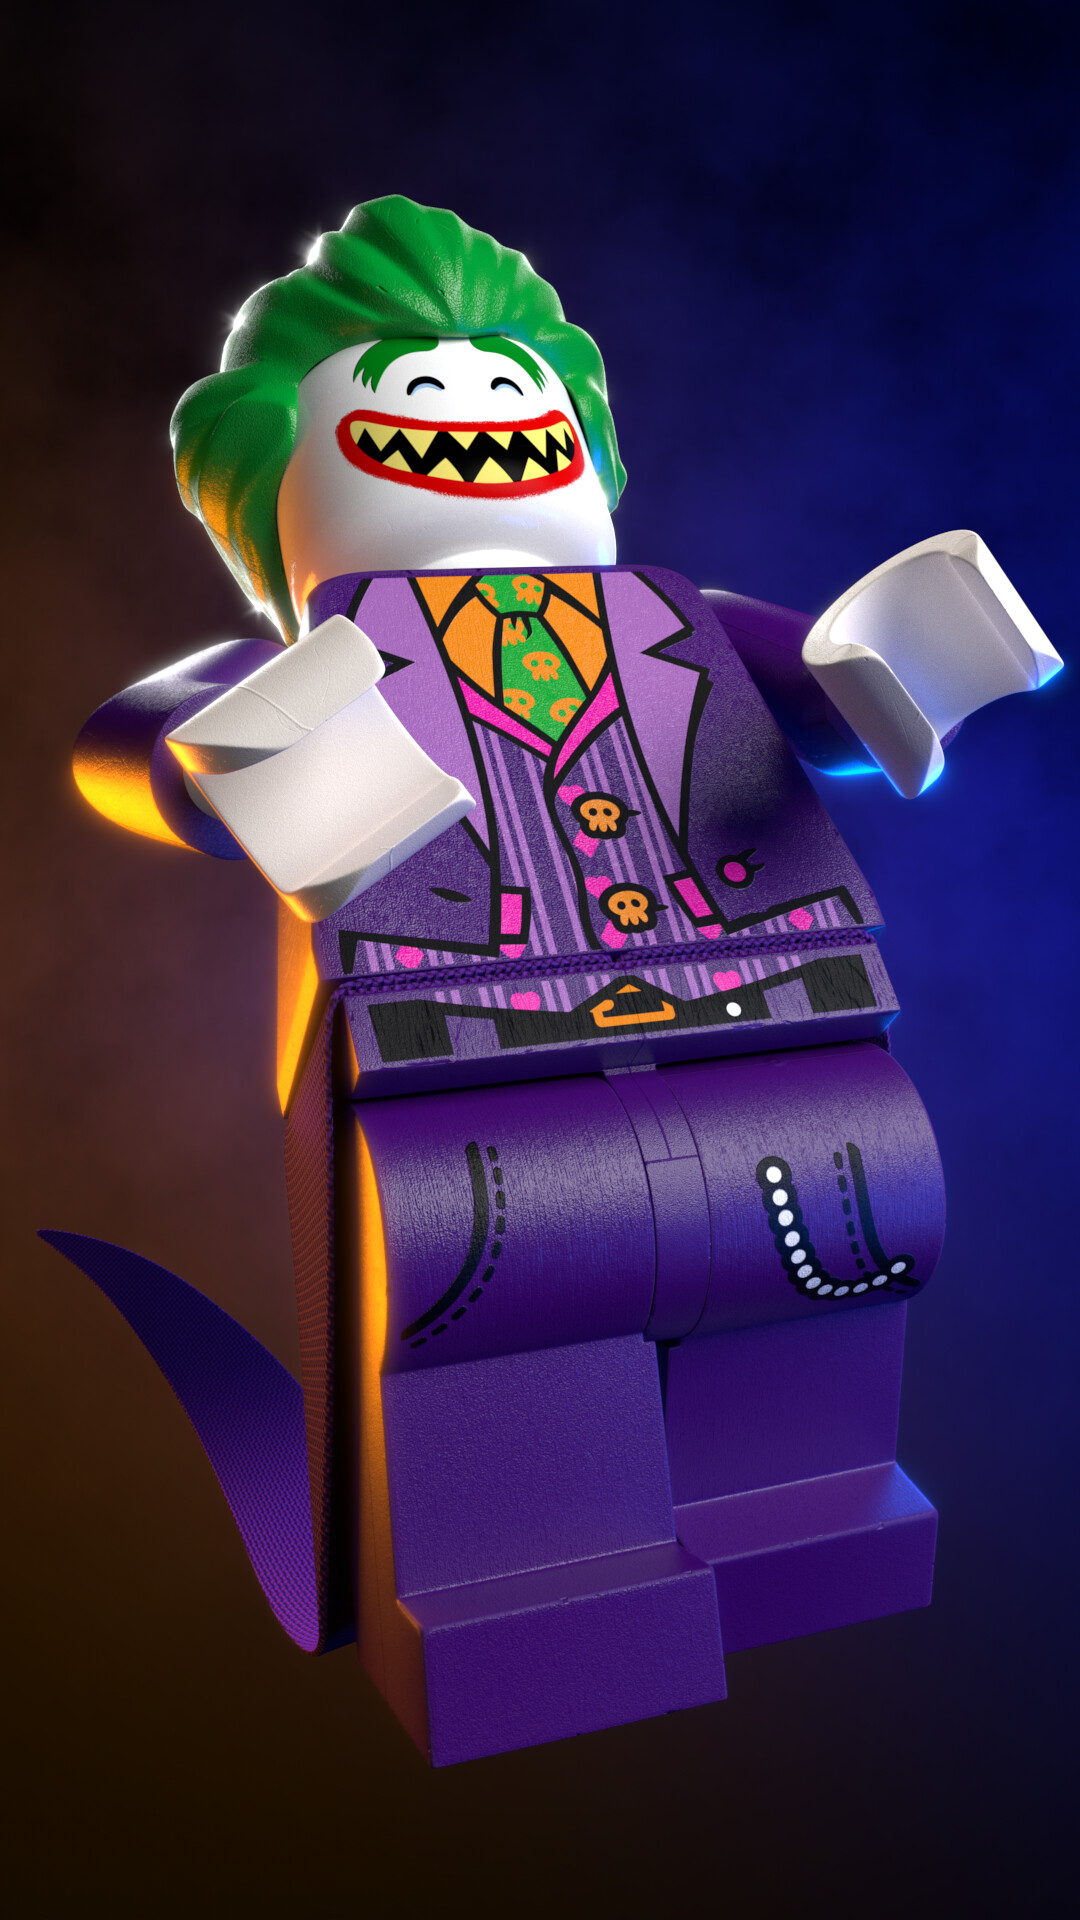 ArtStation - LEGO Joker Minifigure